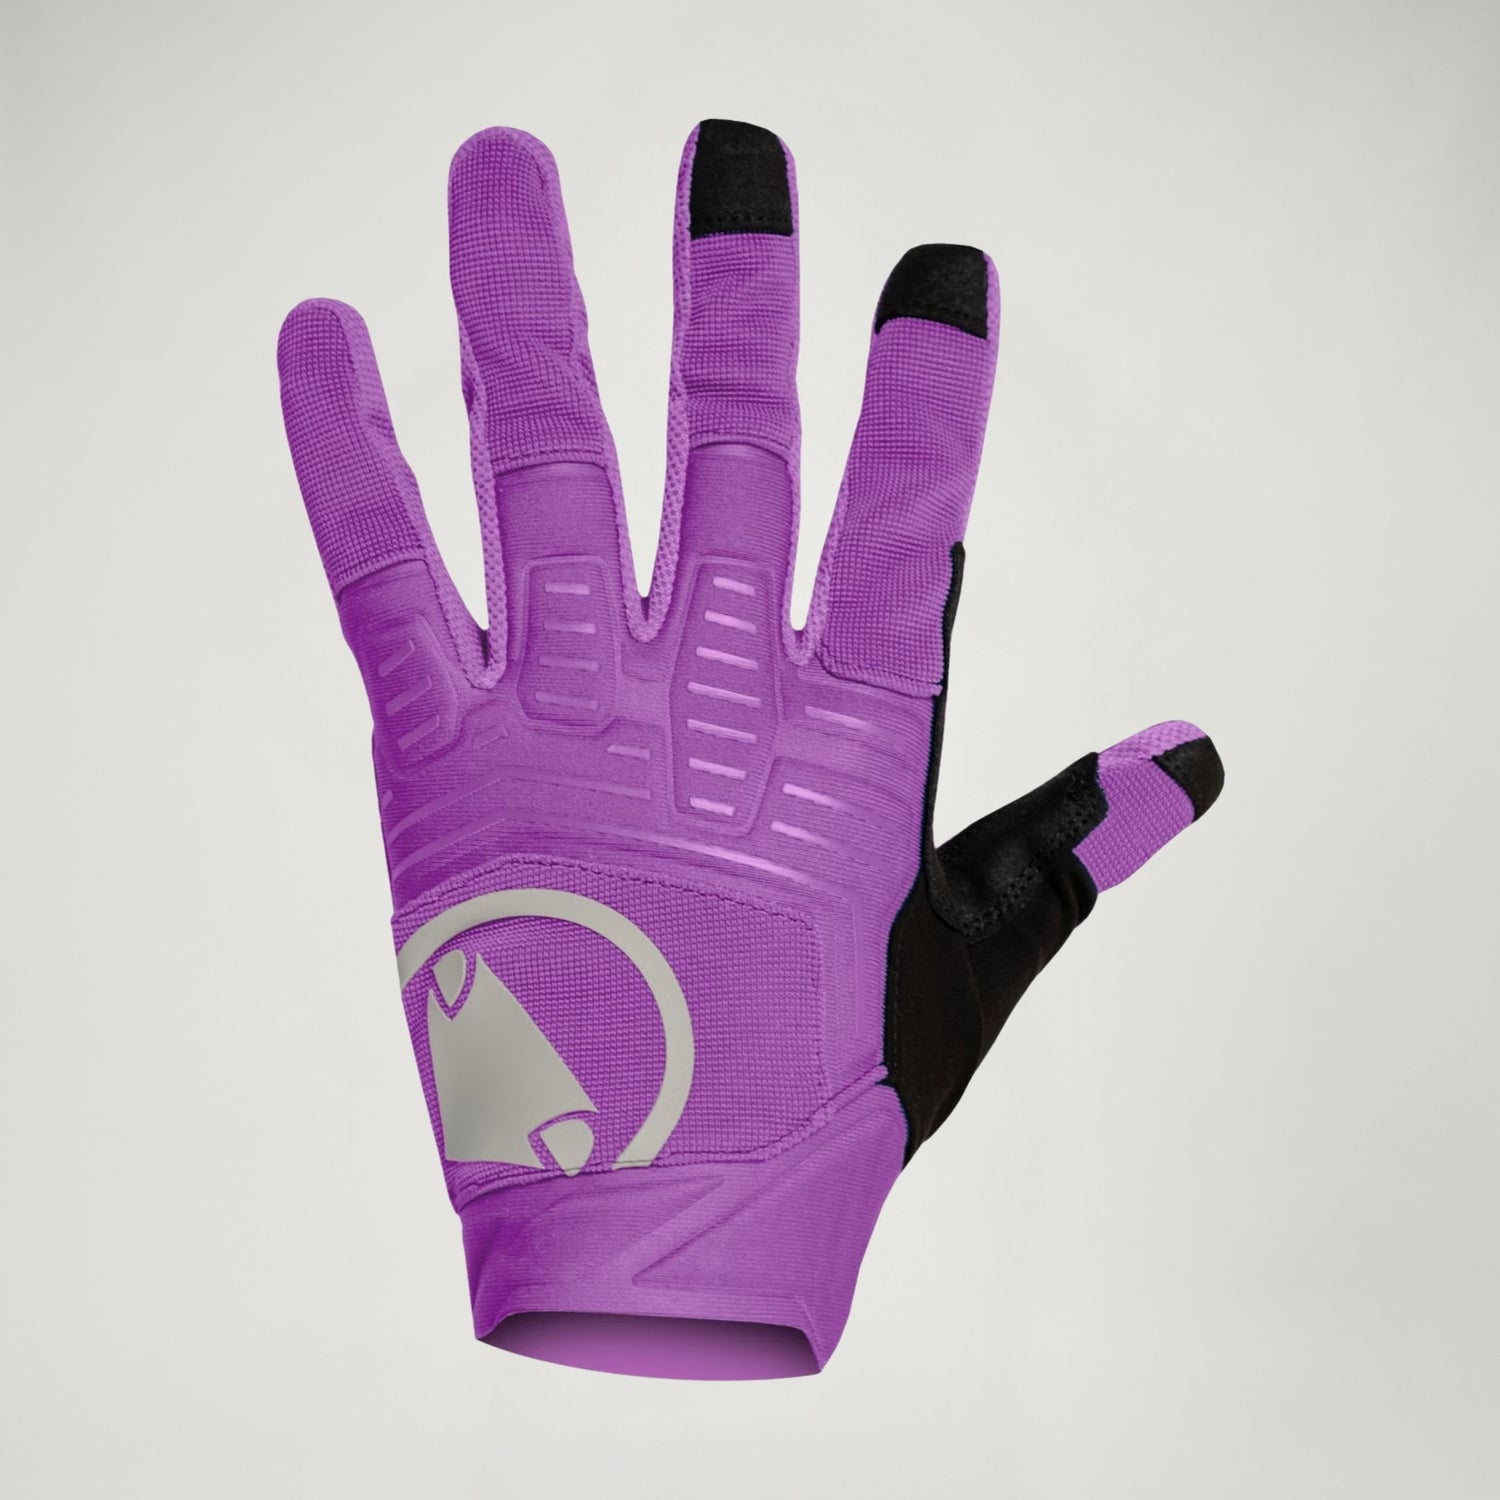 Men's SingleTrack Glove II - Thistle - S